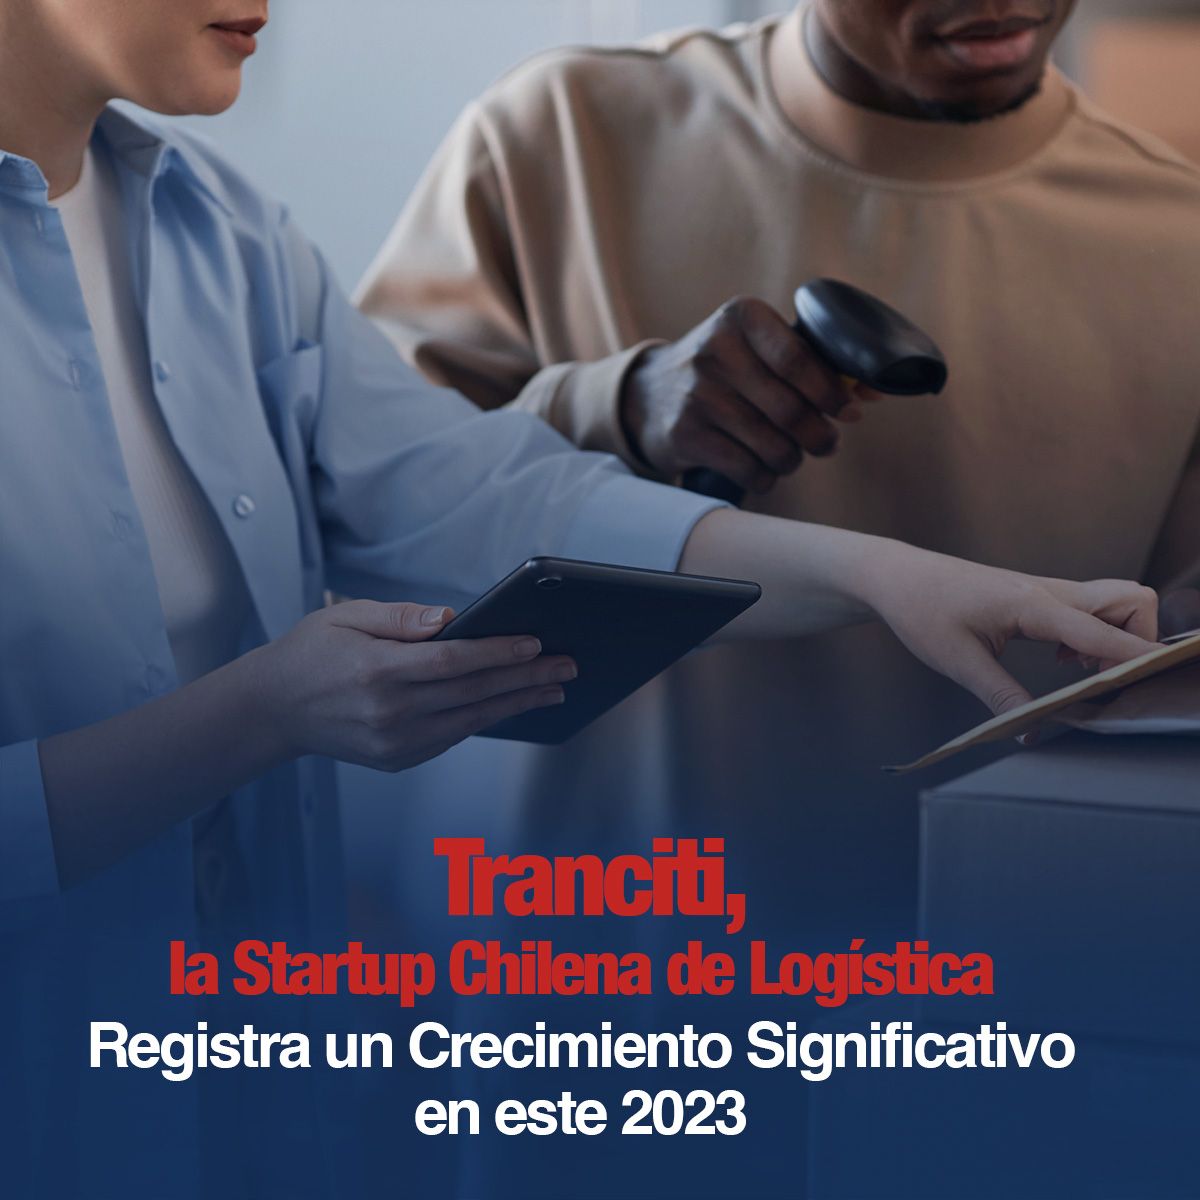 Tranciti, la Startup Chilena de Logística Registra un Crecimiento Significativo en este 2023